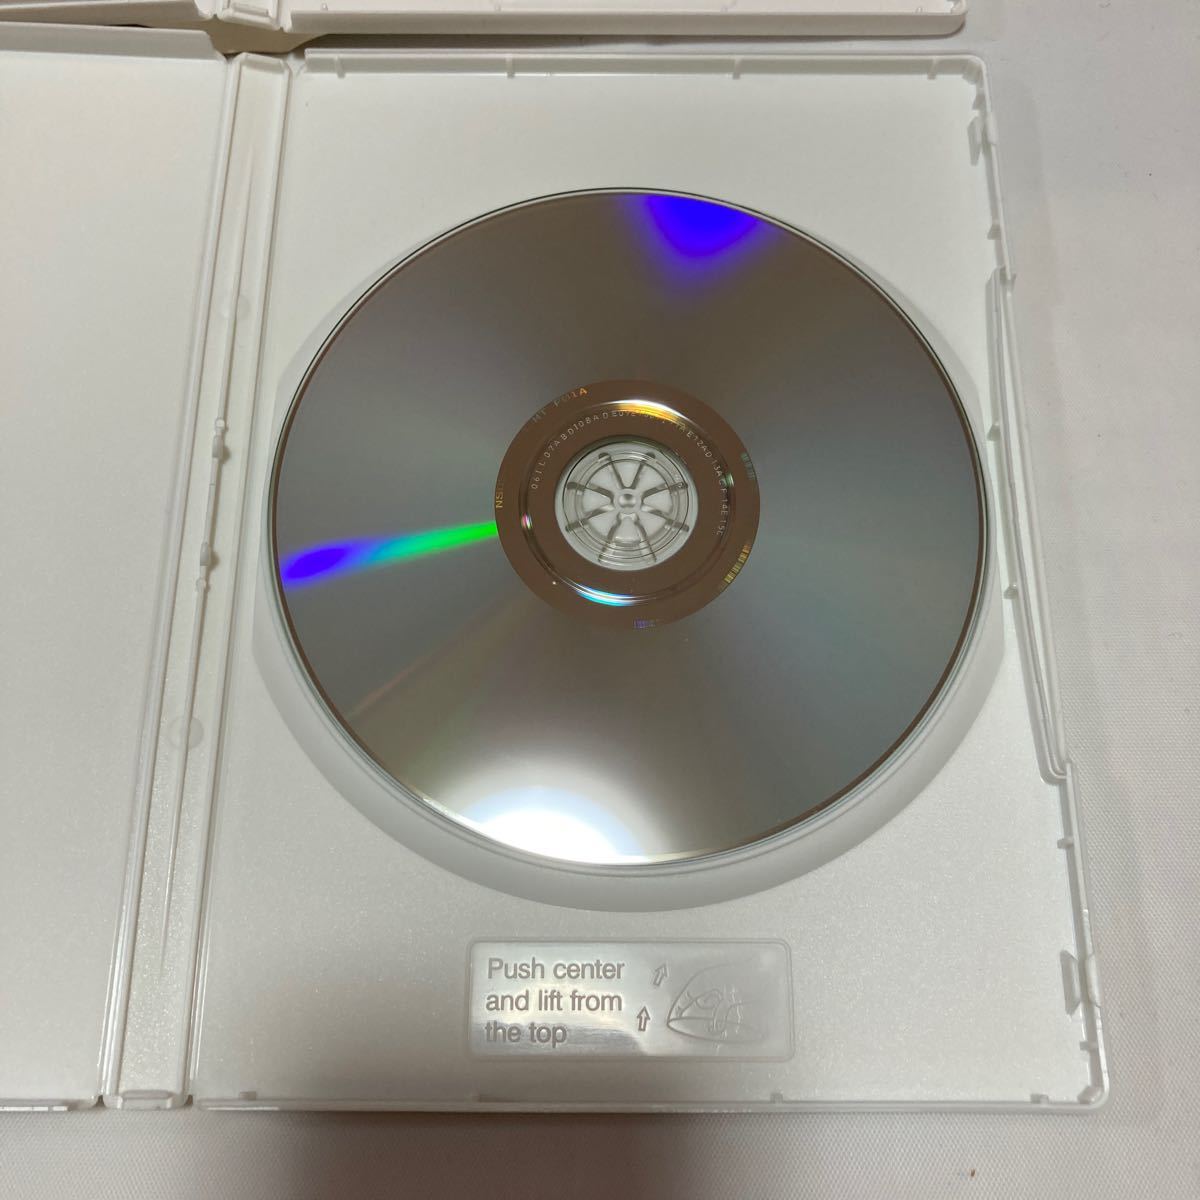 國語元年 DVD-BOX